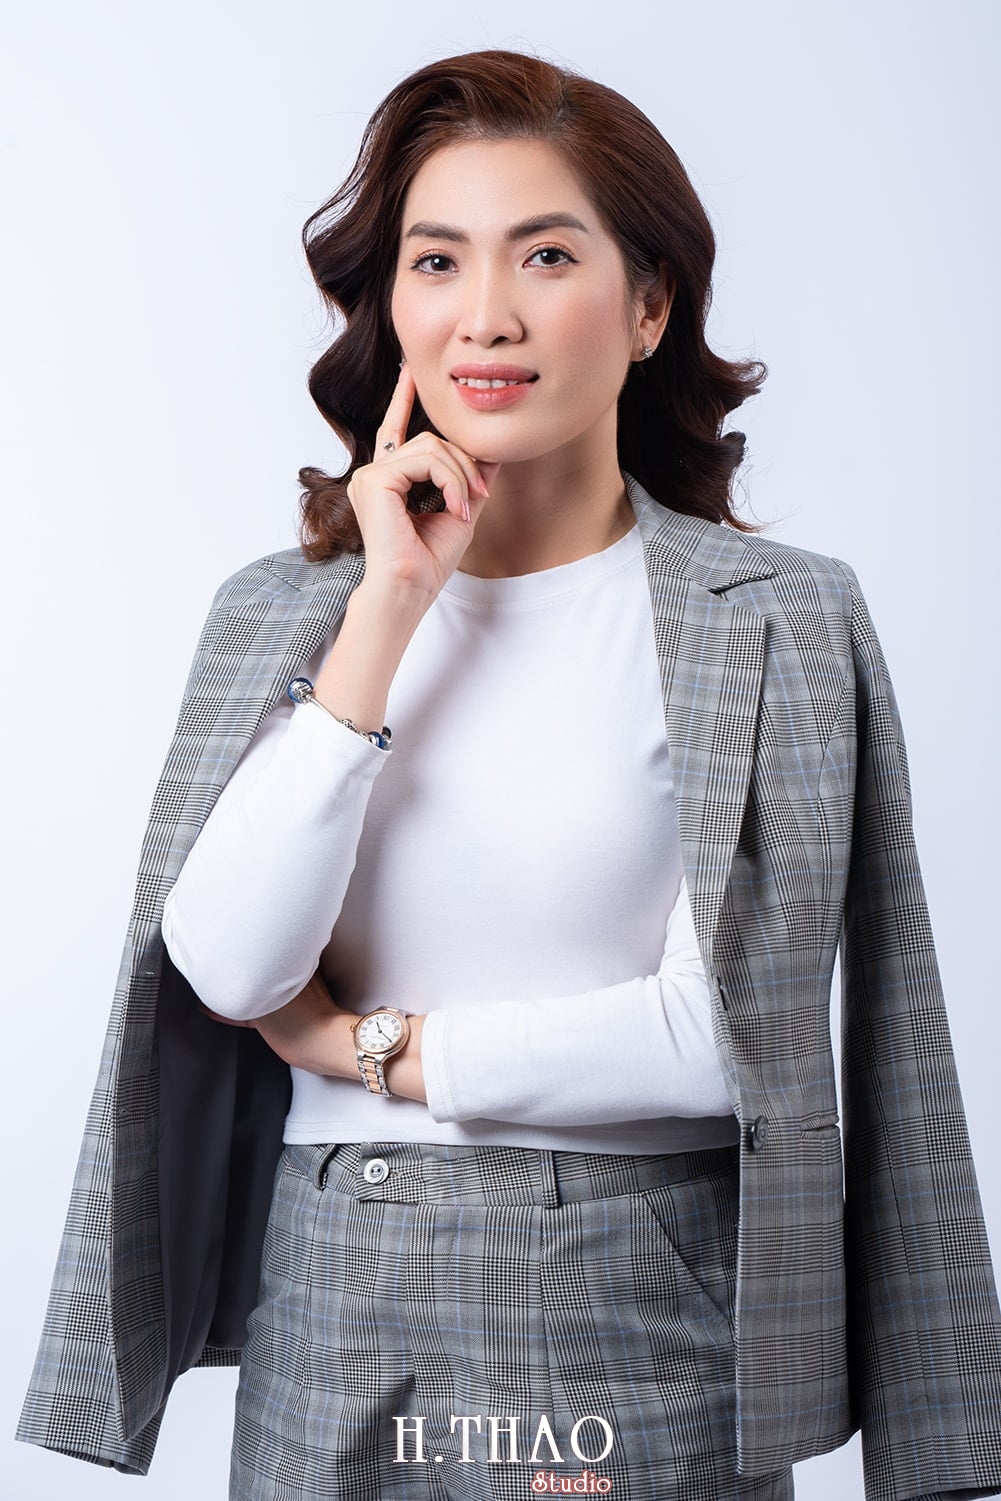 Doanh nhan nu dep 1 - Tổng hợp ảnh đẹp doanh nhân, profile, art tháng 4 – HThao Studio